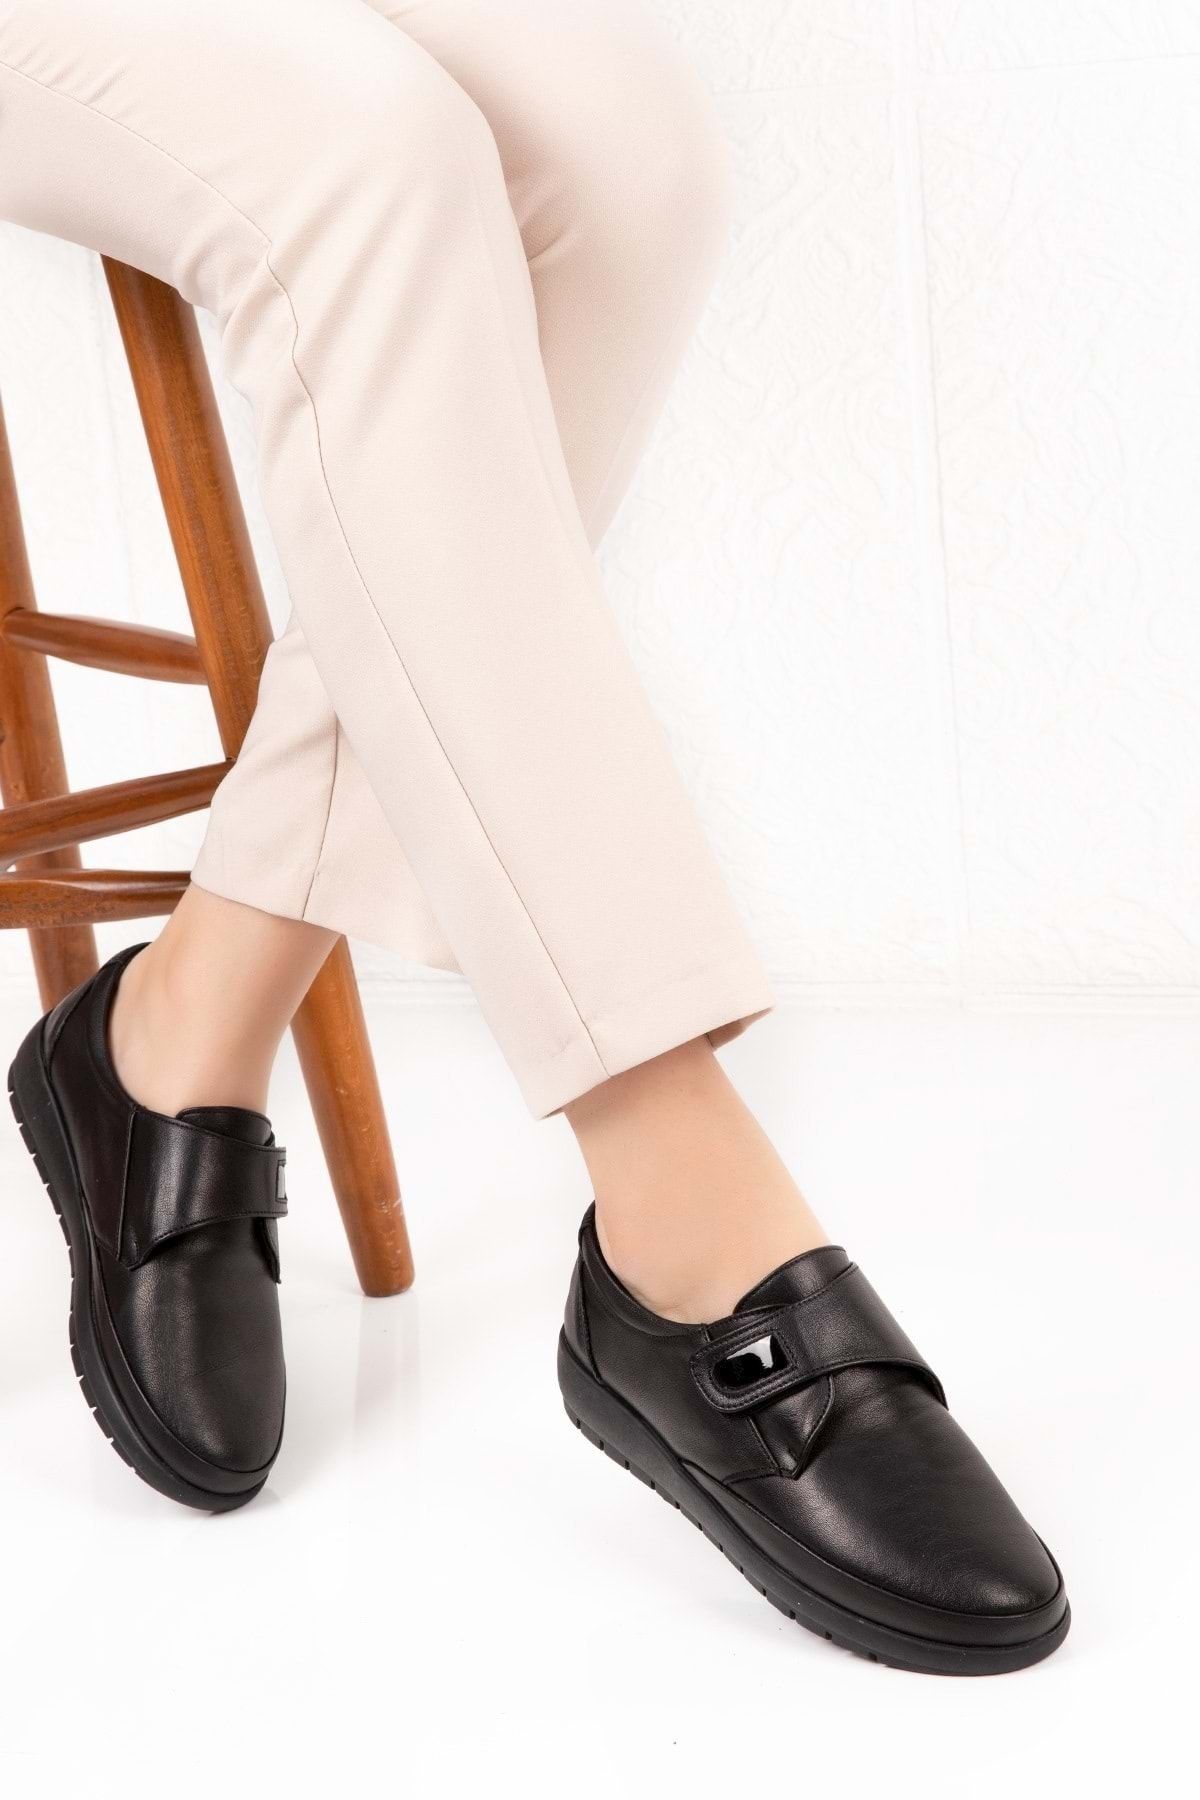 Gondol Kadın Siyah  Deri Ortopedik Taban Günlük Ayakkabı